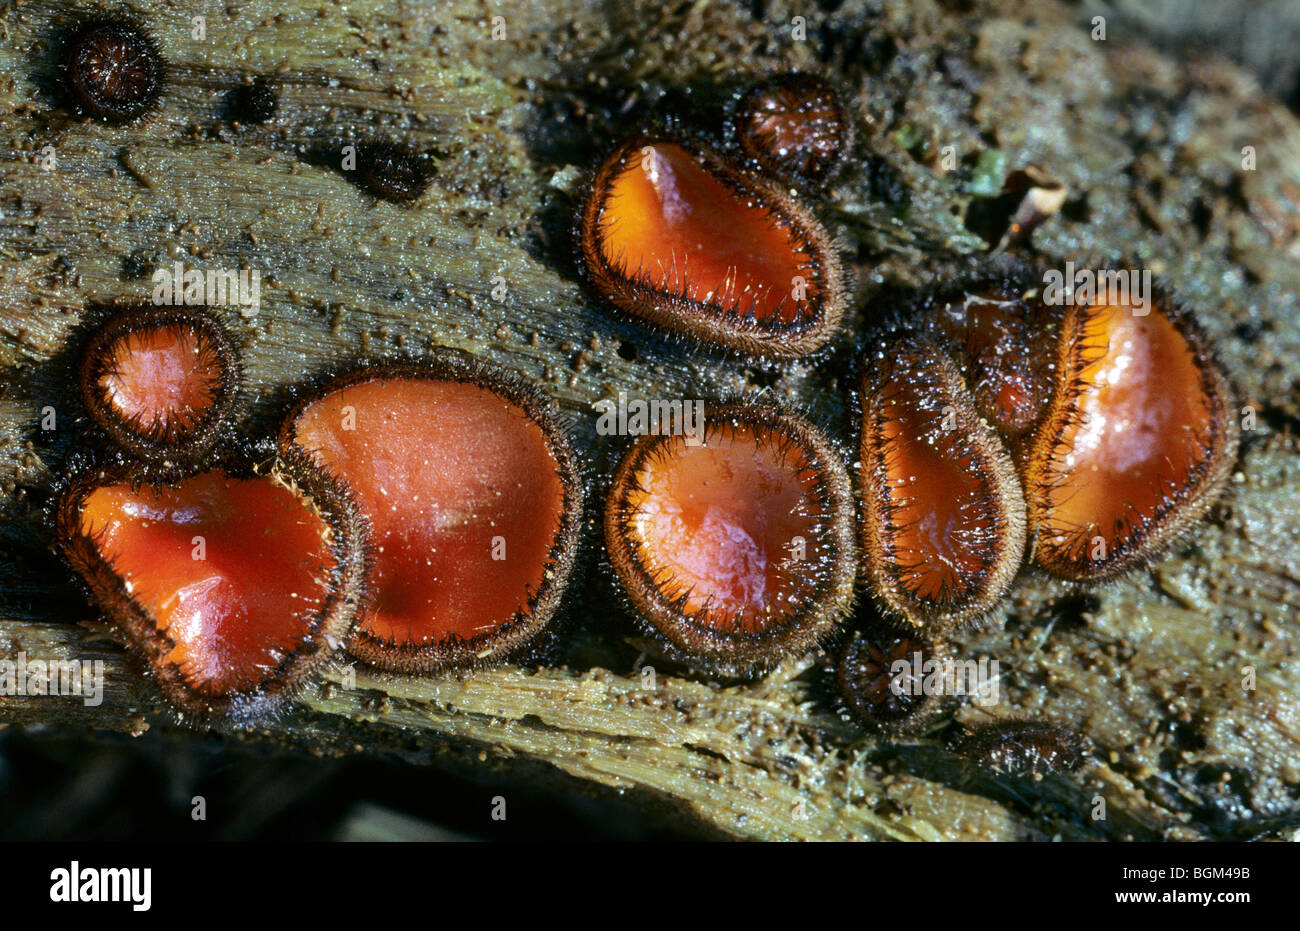 Coppa di ciglia / Molly eye-vimini / scarlet elf / tappo a fungo di ciglia / ciglia coppa pixie (Scutellinia scutellata) sul ramo Foto Stock